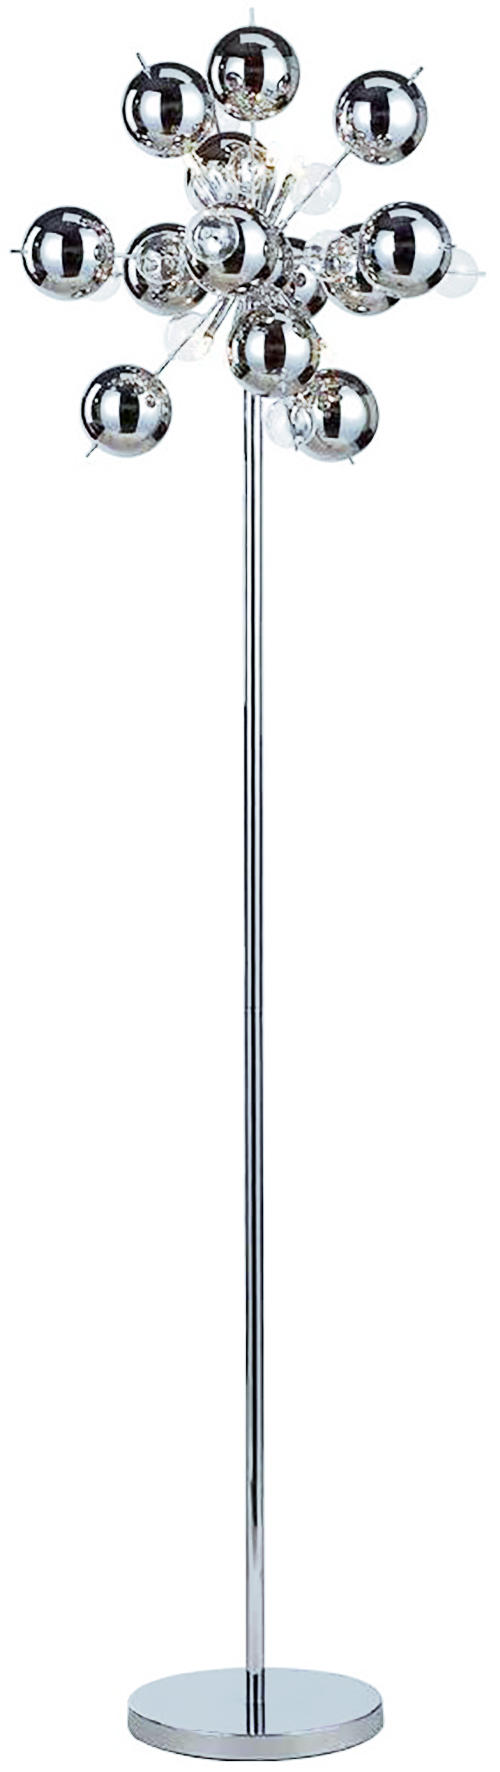 STEHLEUCHTE 50/167 cm    - Klar/Chromfarben, Design, Glas/Metall (50/167cm) - Näve